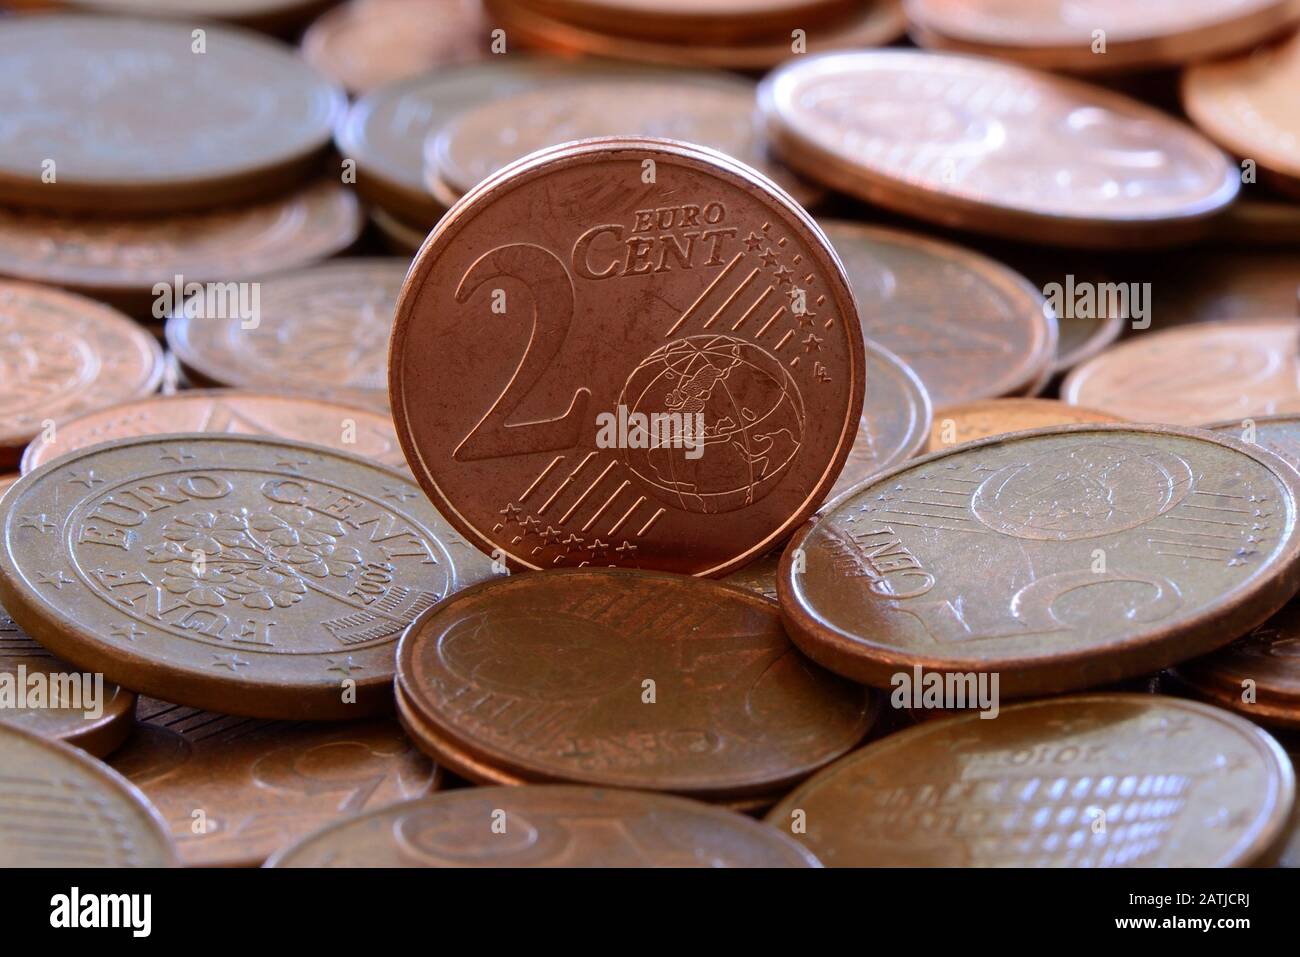 Según los informes de los medios de comunicación, el nuevo jefe de la Comisión de la UE, Ursula von der Leyen, tiene previsto suprimir todas las monedas de 1 y 2 céntimos. Foto de stock